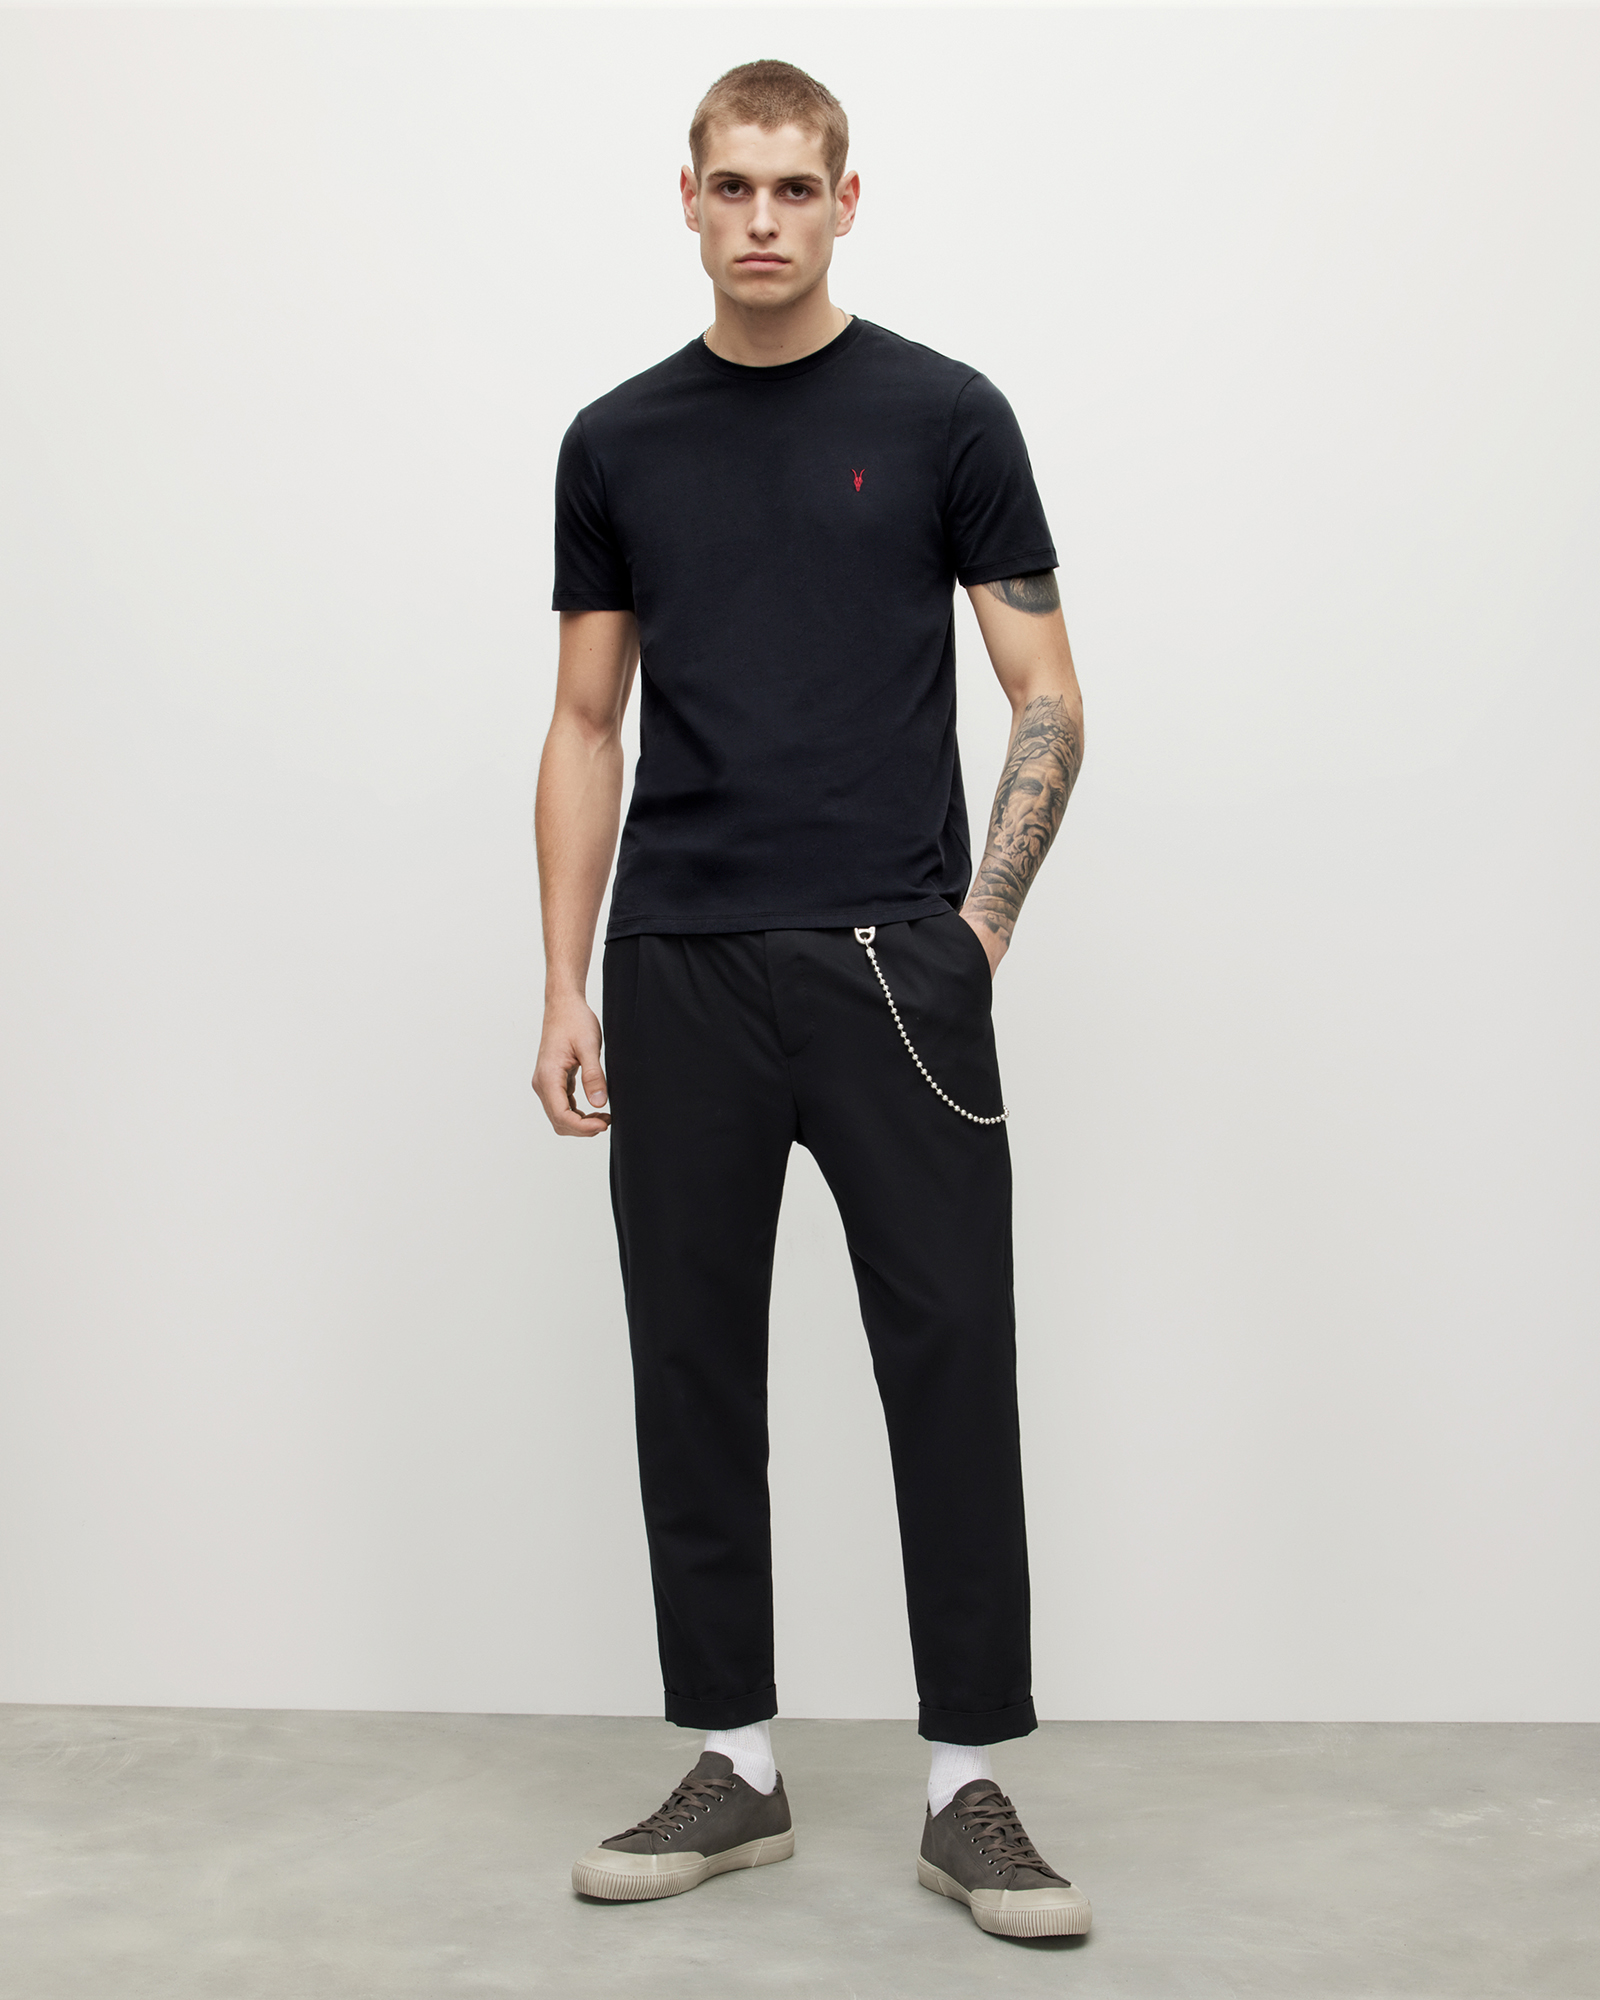 AllSaints Men's Cotton Brace Contrast Crew T-Shirt, Washed Black, Size: L